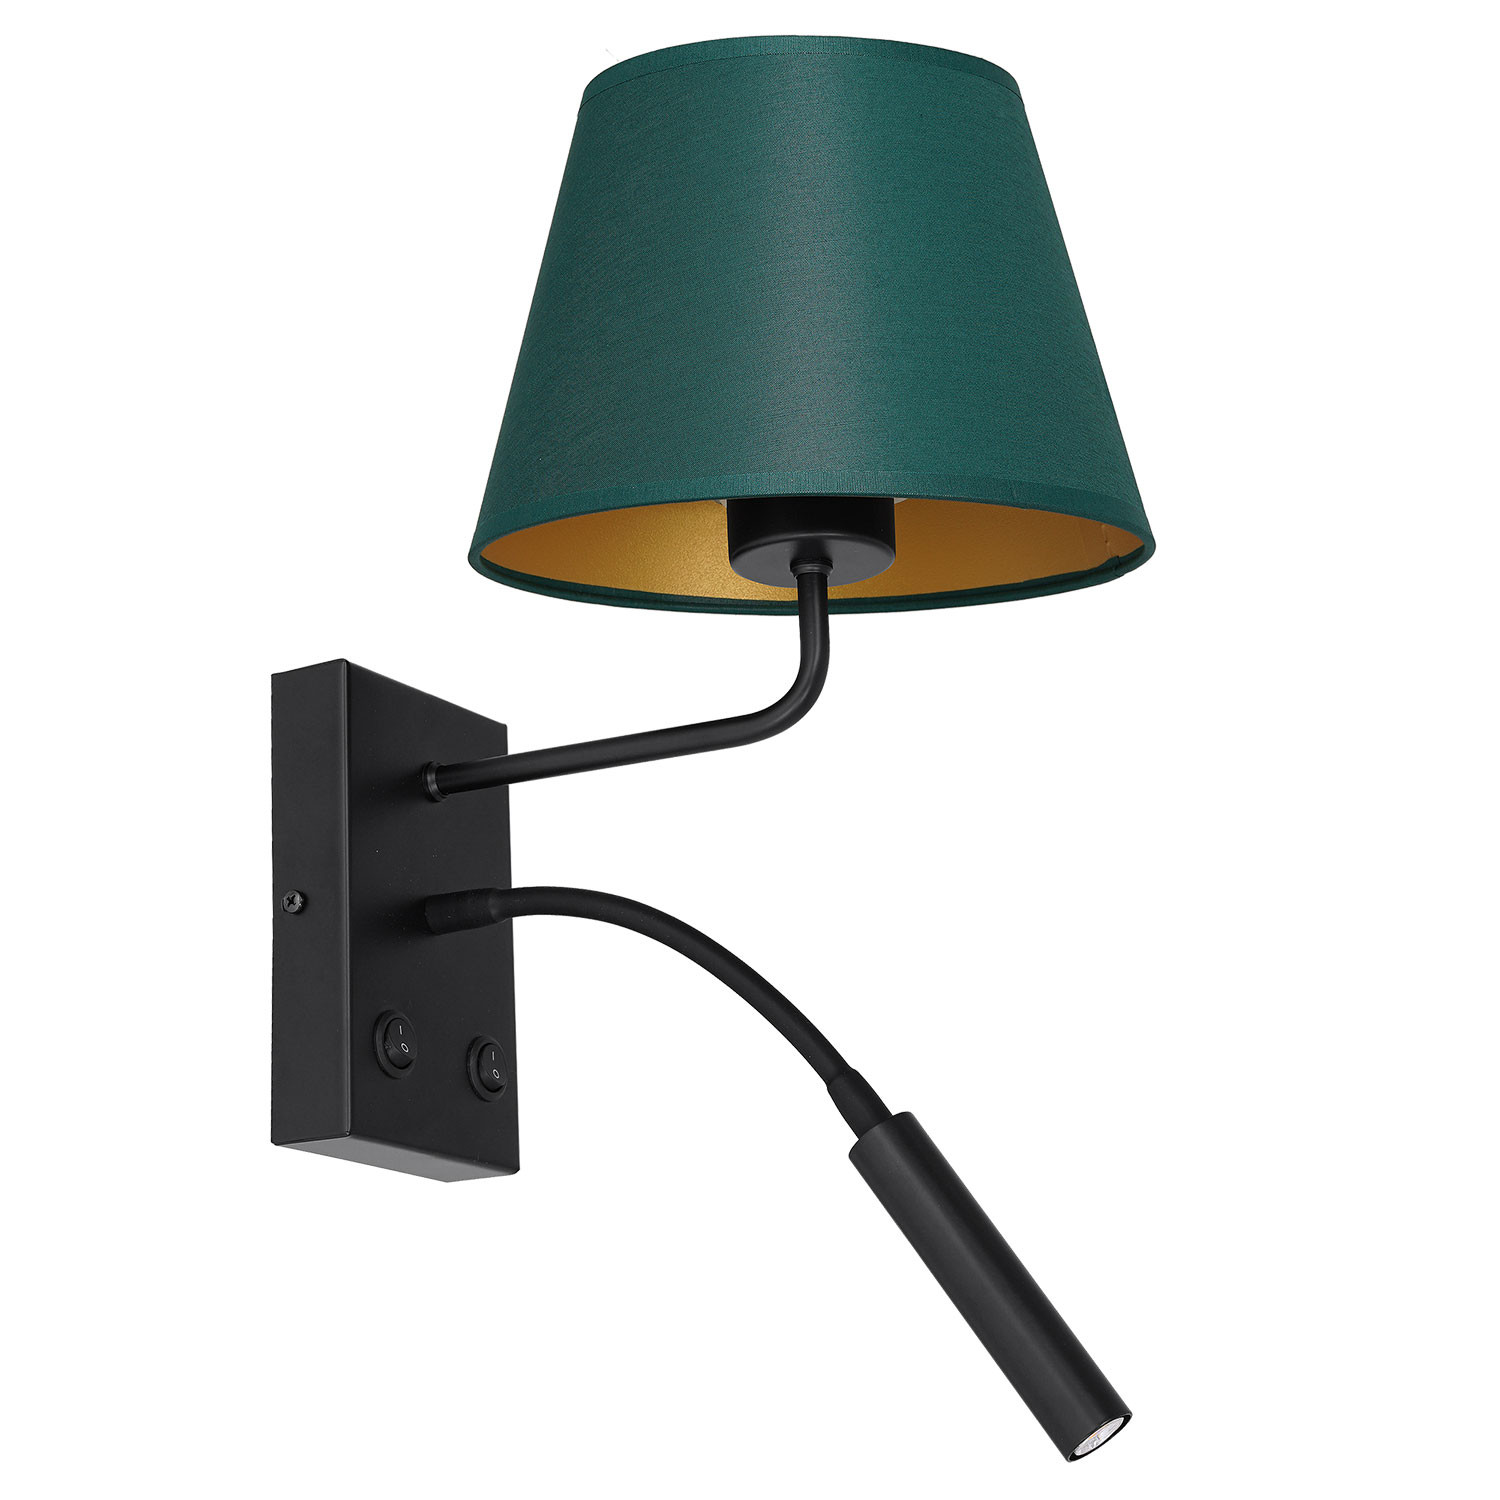 Luminex Arden 3558 kinkiet lampa ścienna 2x8W+60W G9+E27 czarny/zielony/złoty